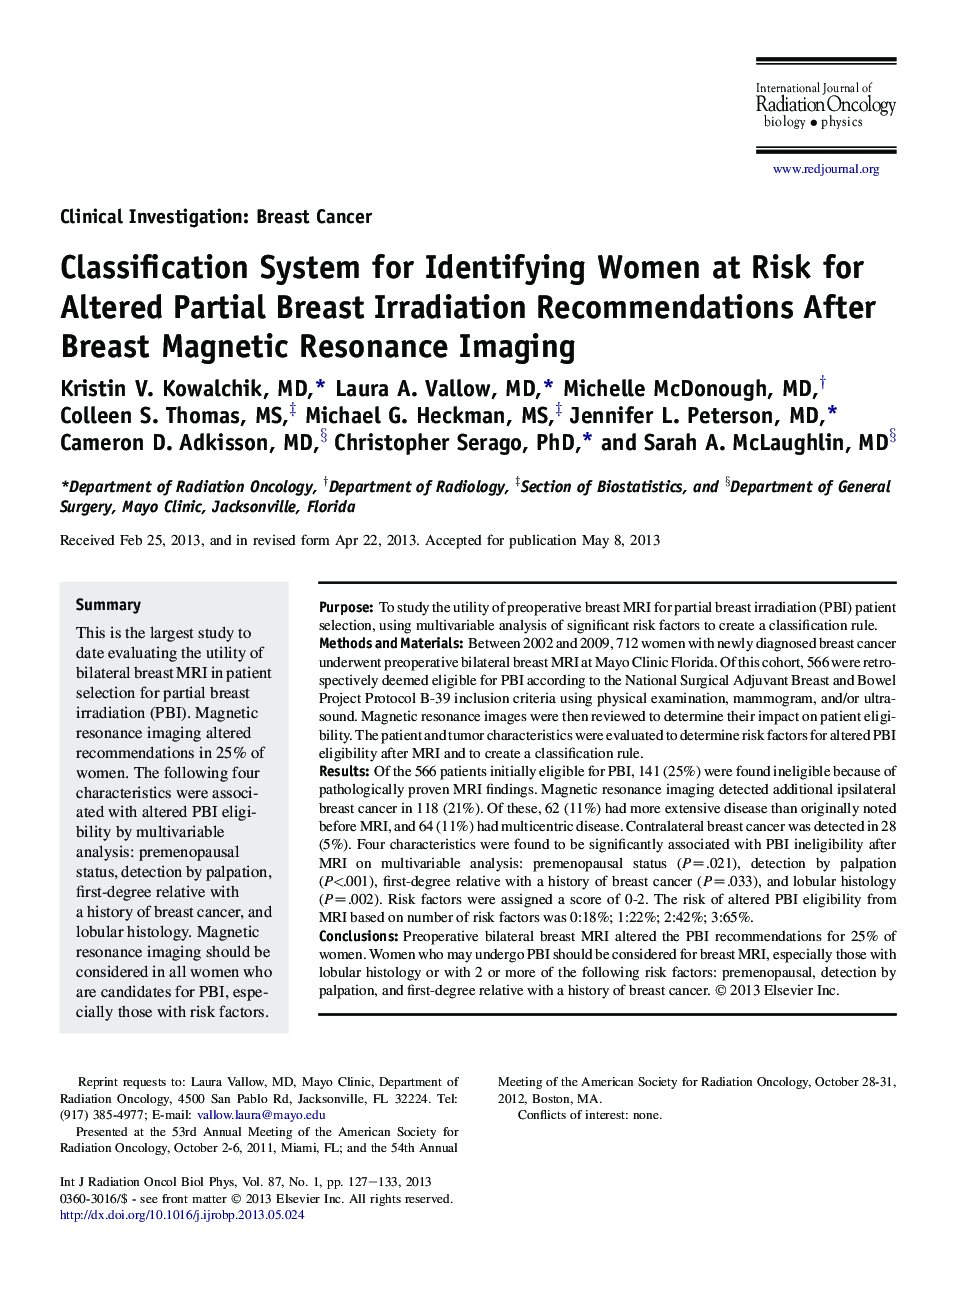 سیستم طبقه بندی شناسایی زنان خطر ابتلا به تغییرات توصیه های تغذیه پستان پس از تصویربرداری رزونانس مغناطیسی پستان 